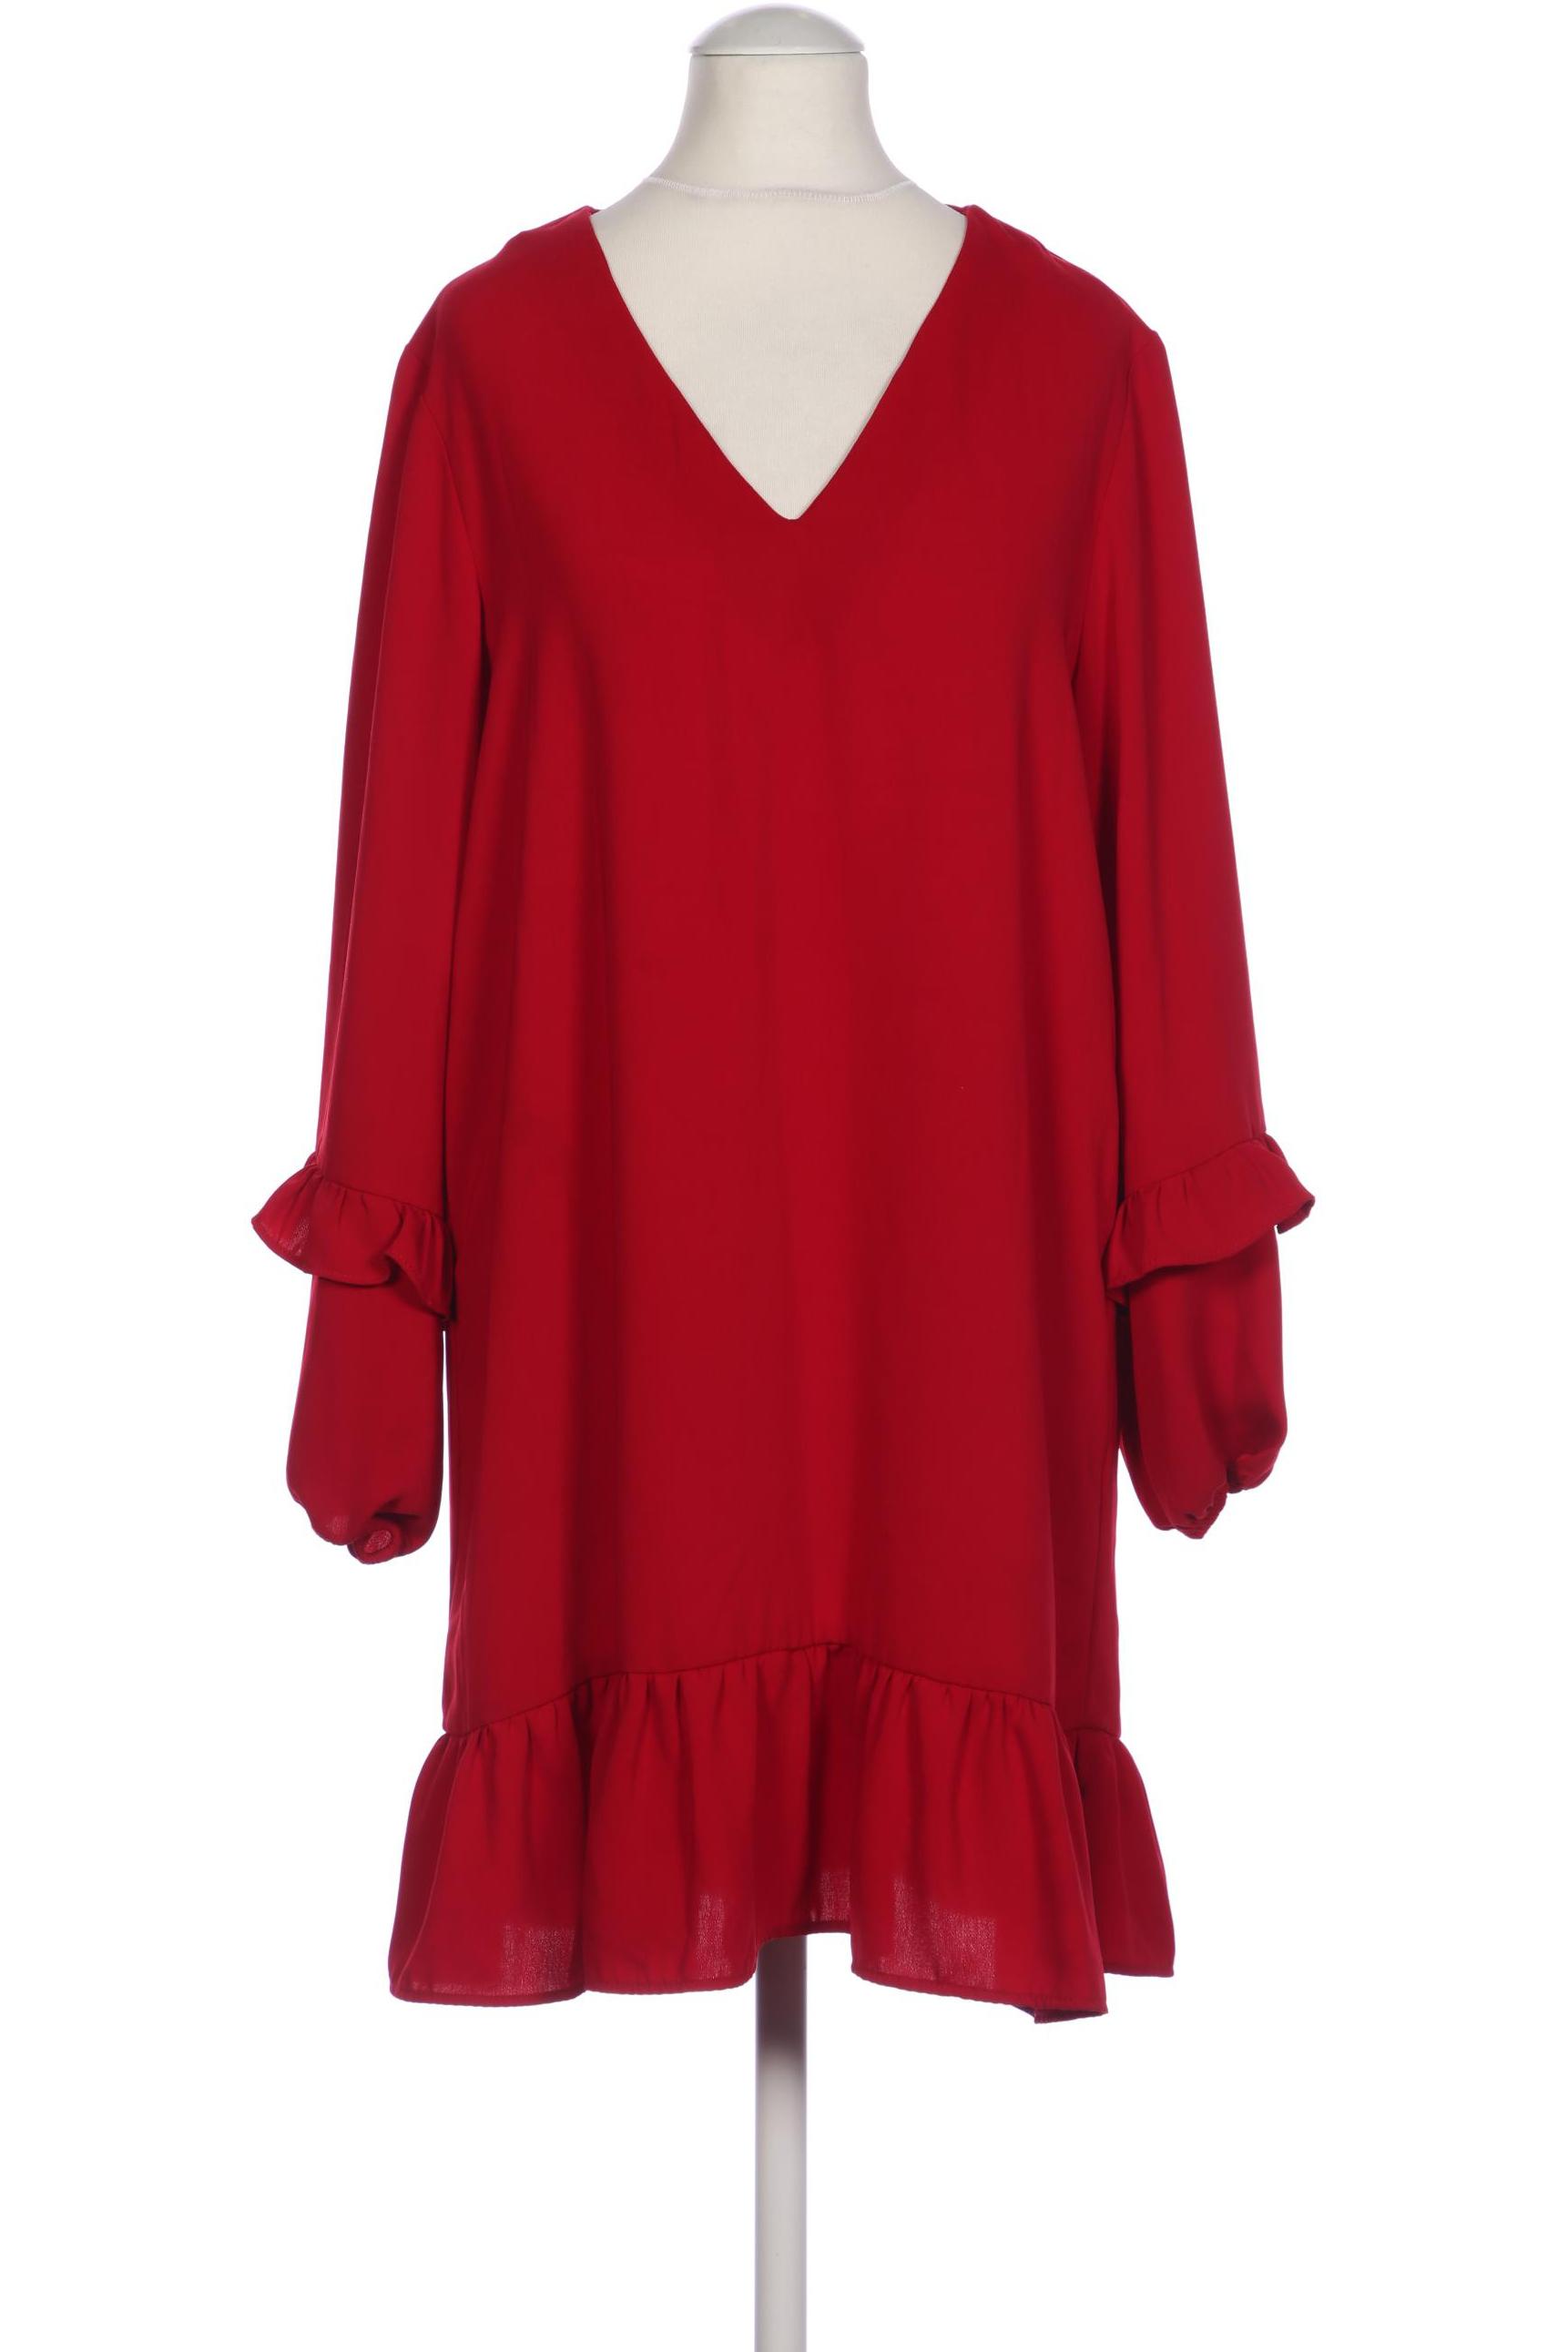 ZARA Damen Kleid, rot von ZARA